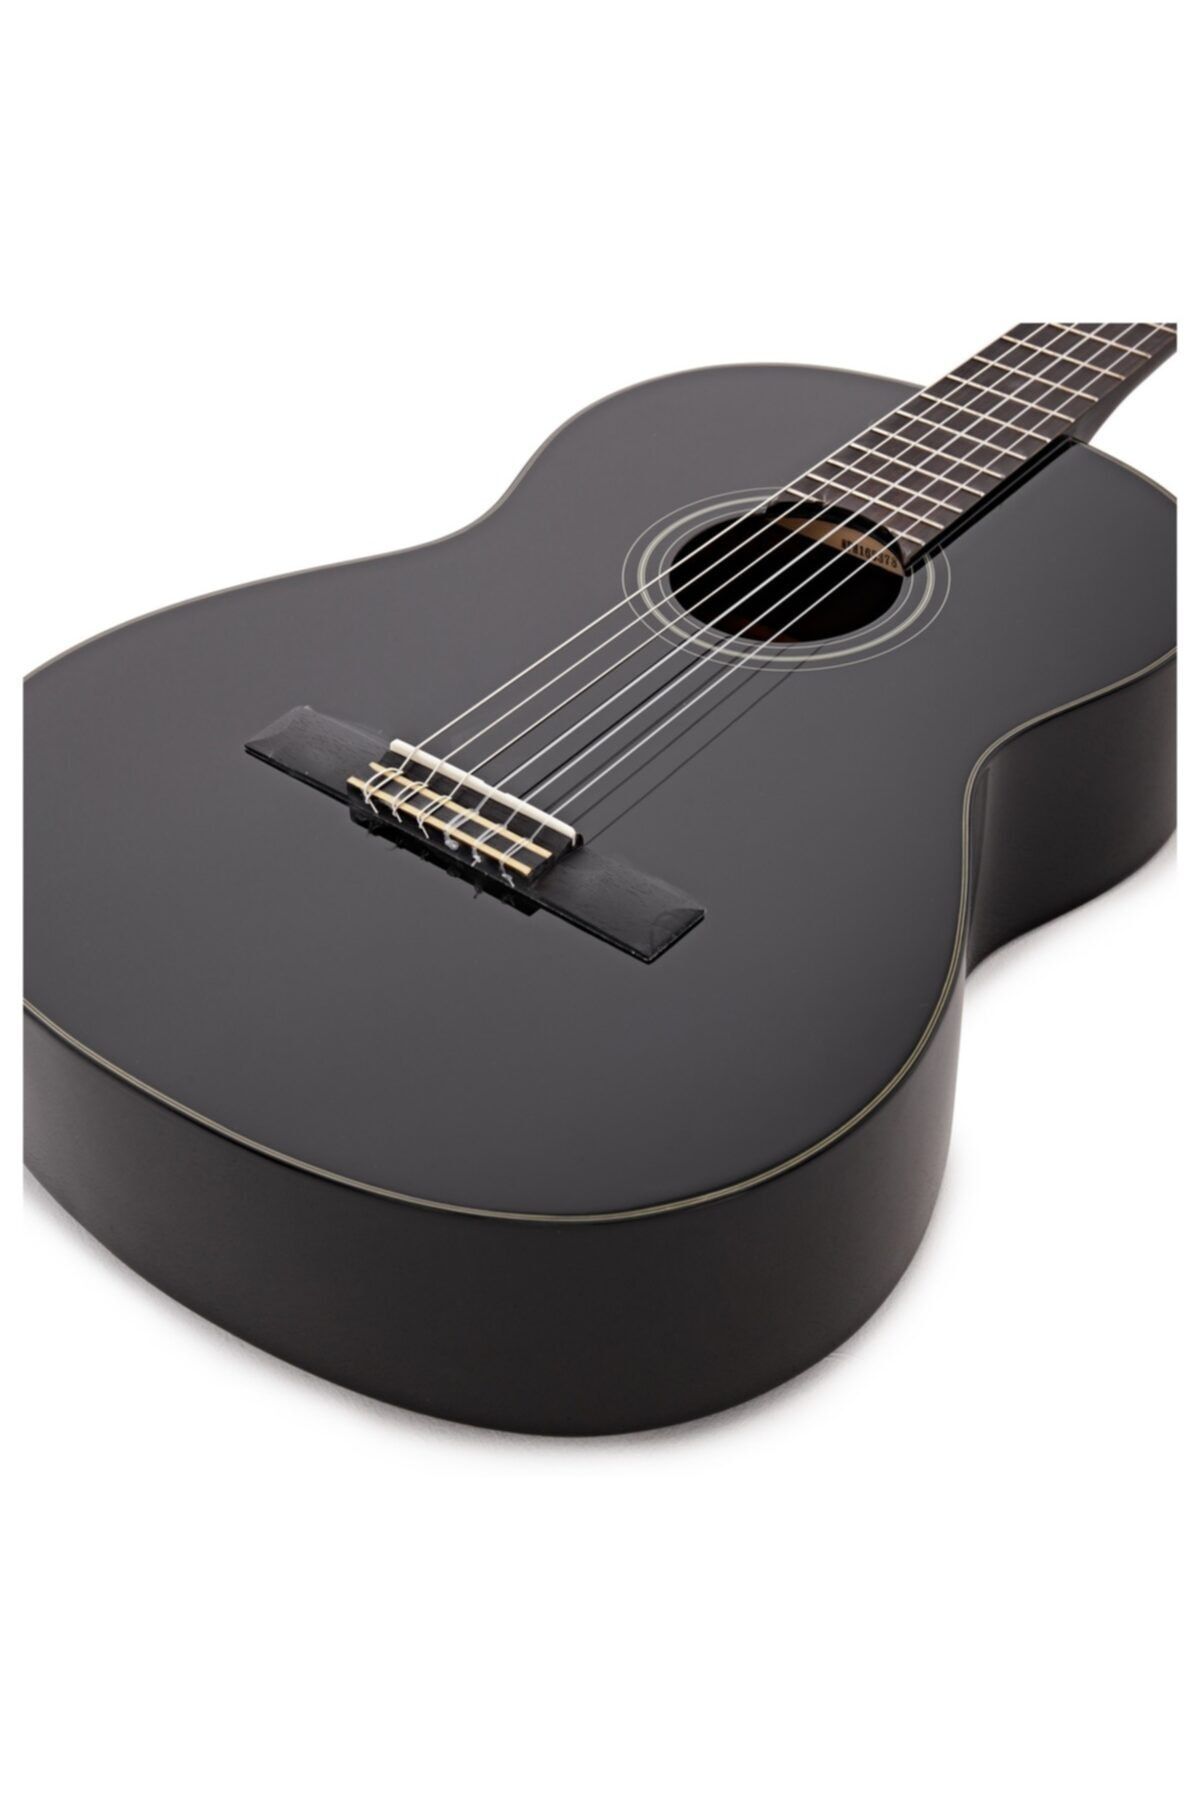 Yamaha C40 Klasik Gitar